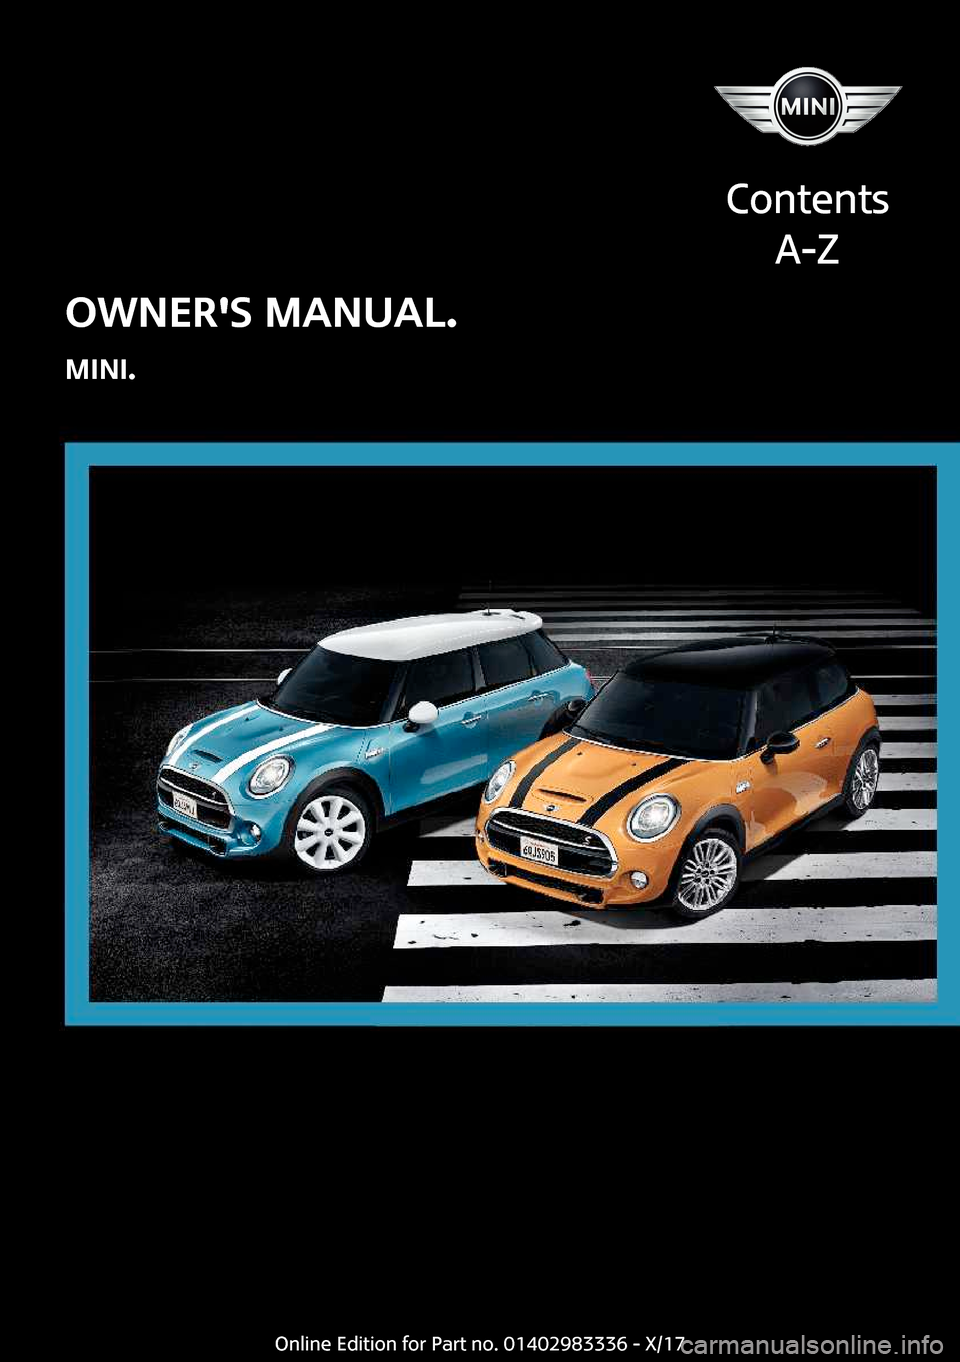 MINI Hardtop 4 Door 2018  Owners Manual �O�W�N�E�R��S��M�A�N�U�A�L�.
�M�I�N�I�.
�C�o�n�t�e�n�t�s �A�-�Z�O�n�l�i�n�e� �E�d�i�t�i�o�n� �f�o�r� �P�a�r�t� �n�o�.� �0�1�4�0�2�9�8�3�3�3�6� �-� �X�/�1�7  